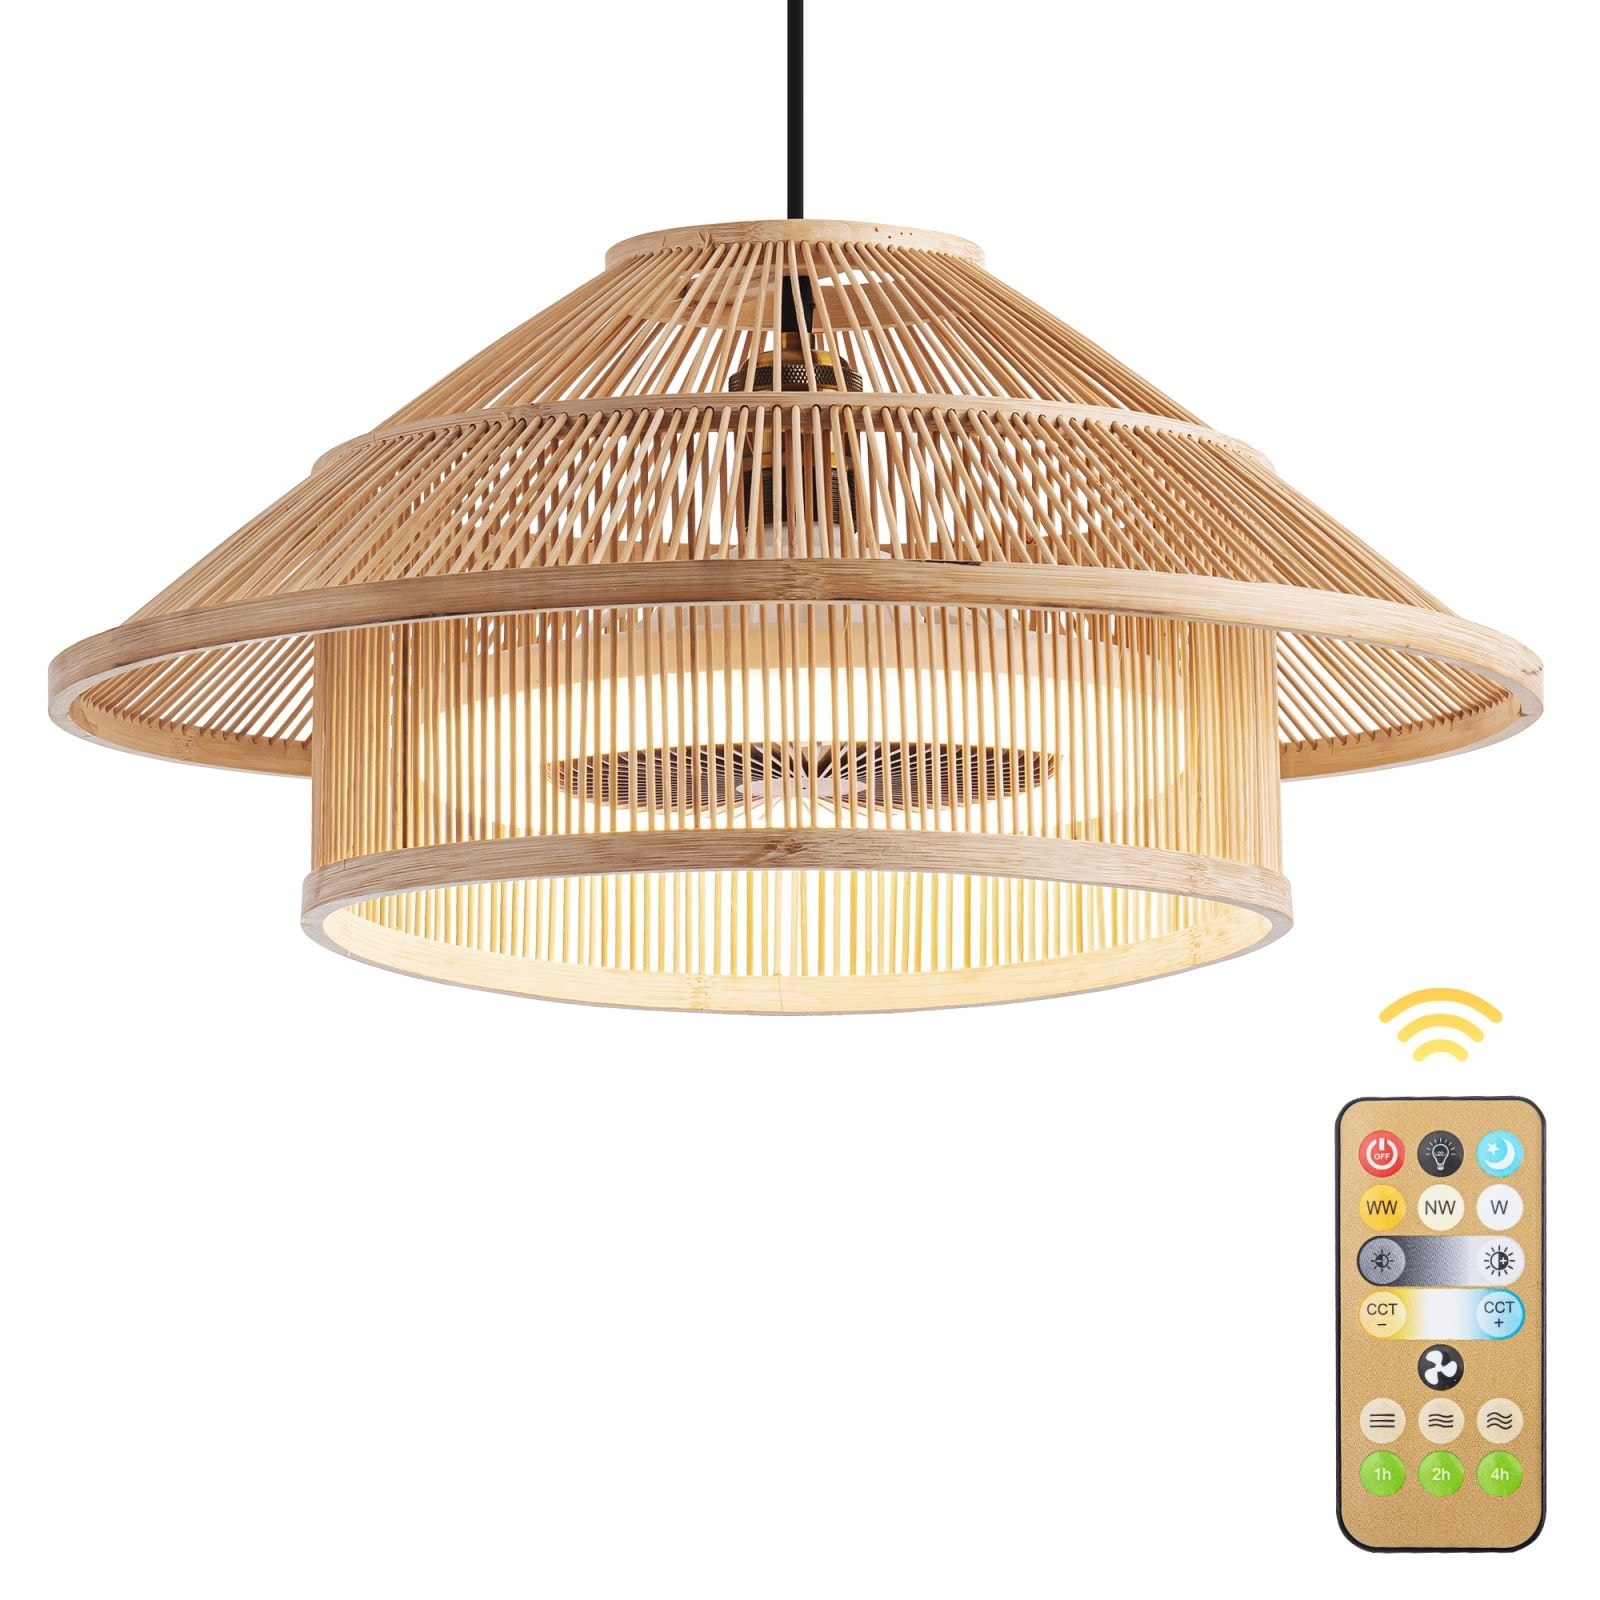 Bamboo ceiling fan lights 3-Speed Fandelier With R...